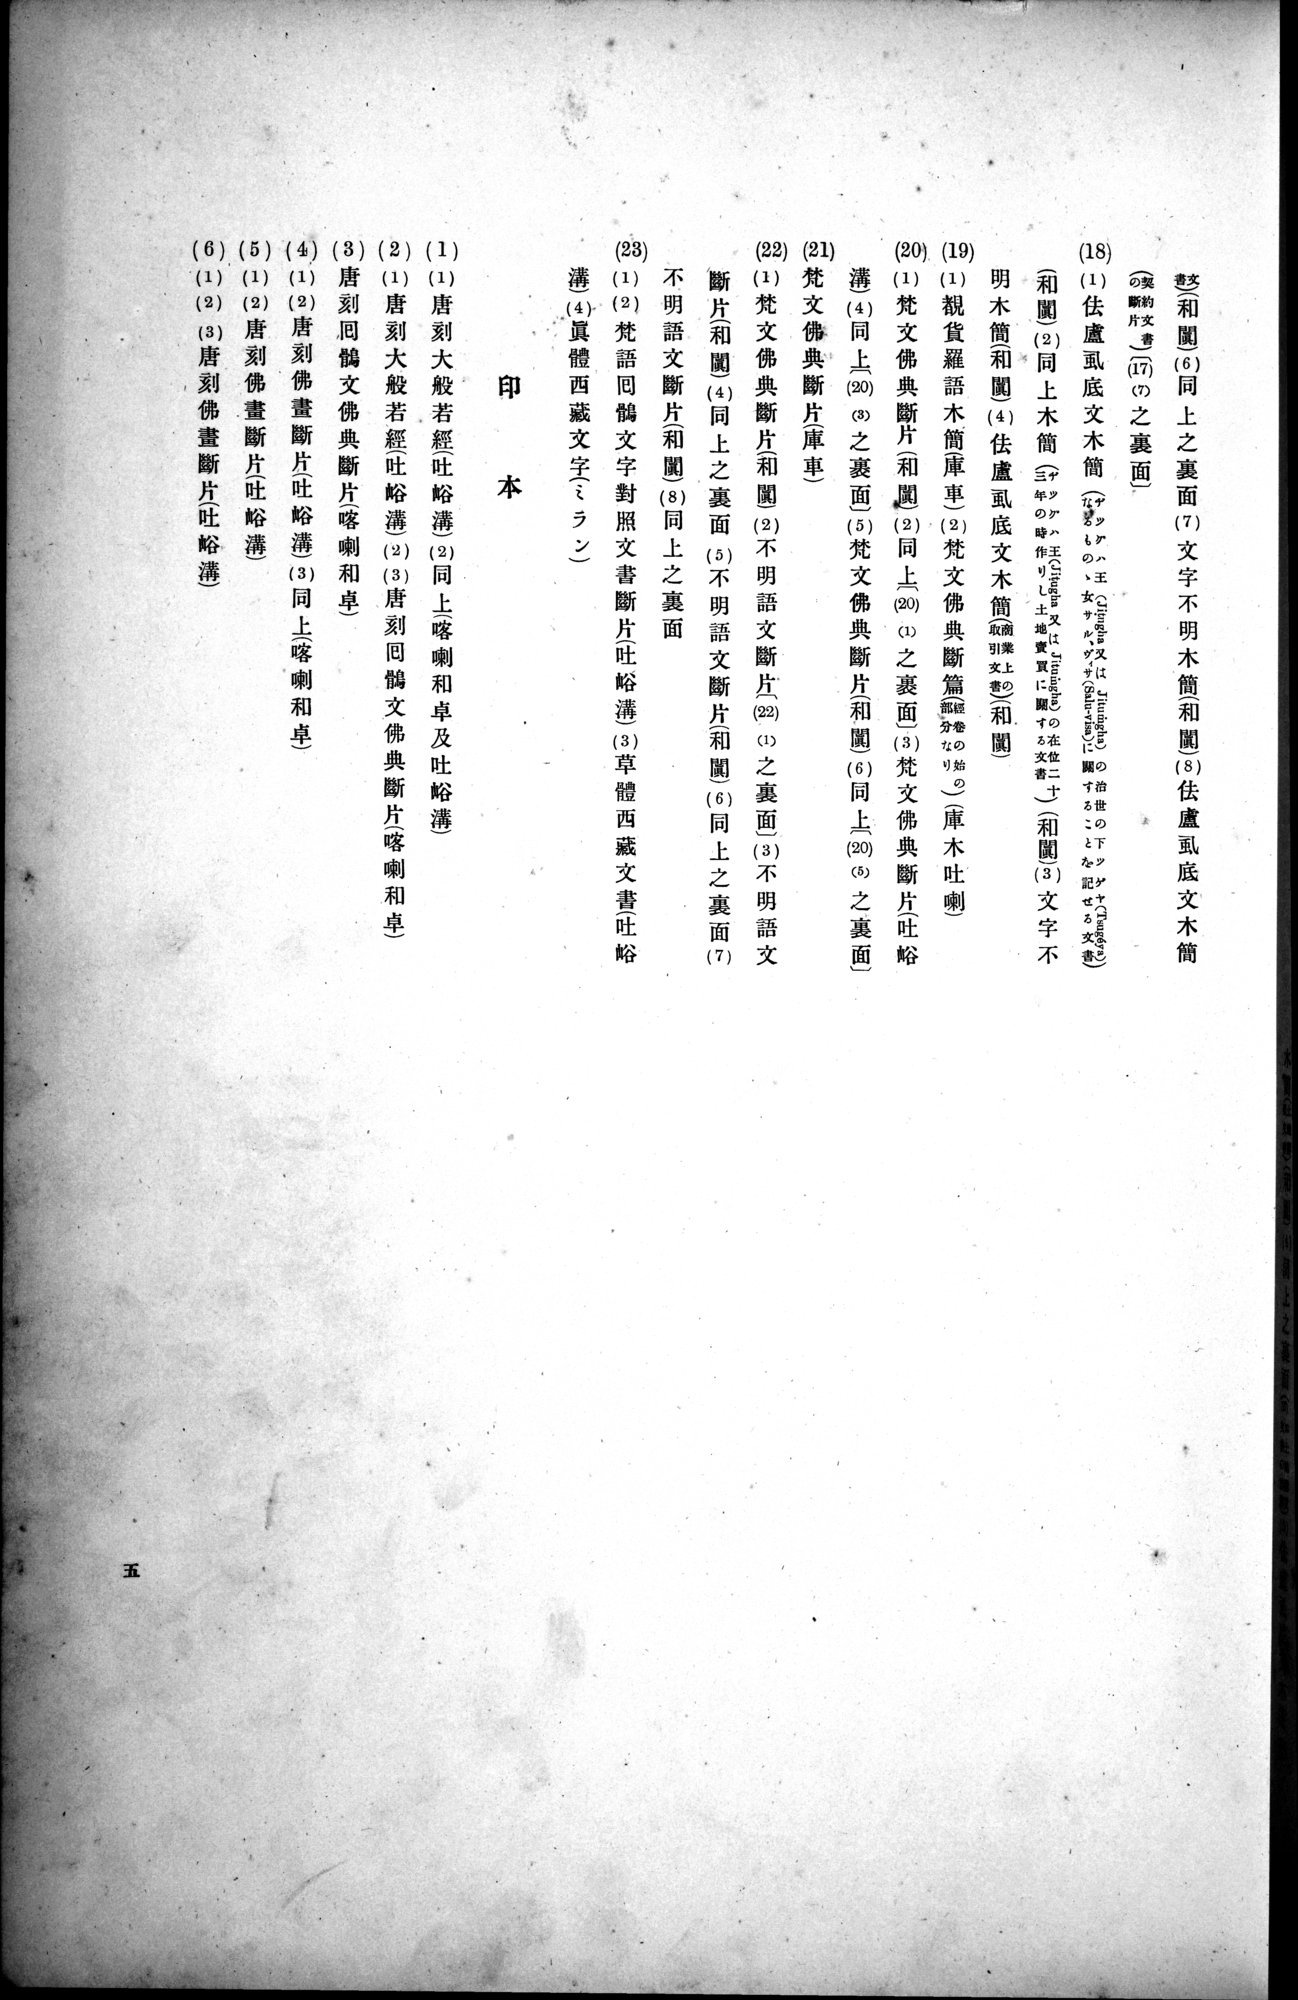 西域考古図譜 : vol.2 / Page 11 (Grayscale High Resolution Image)